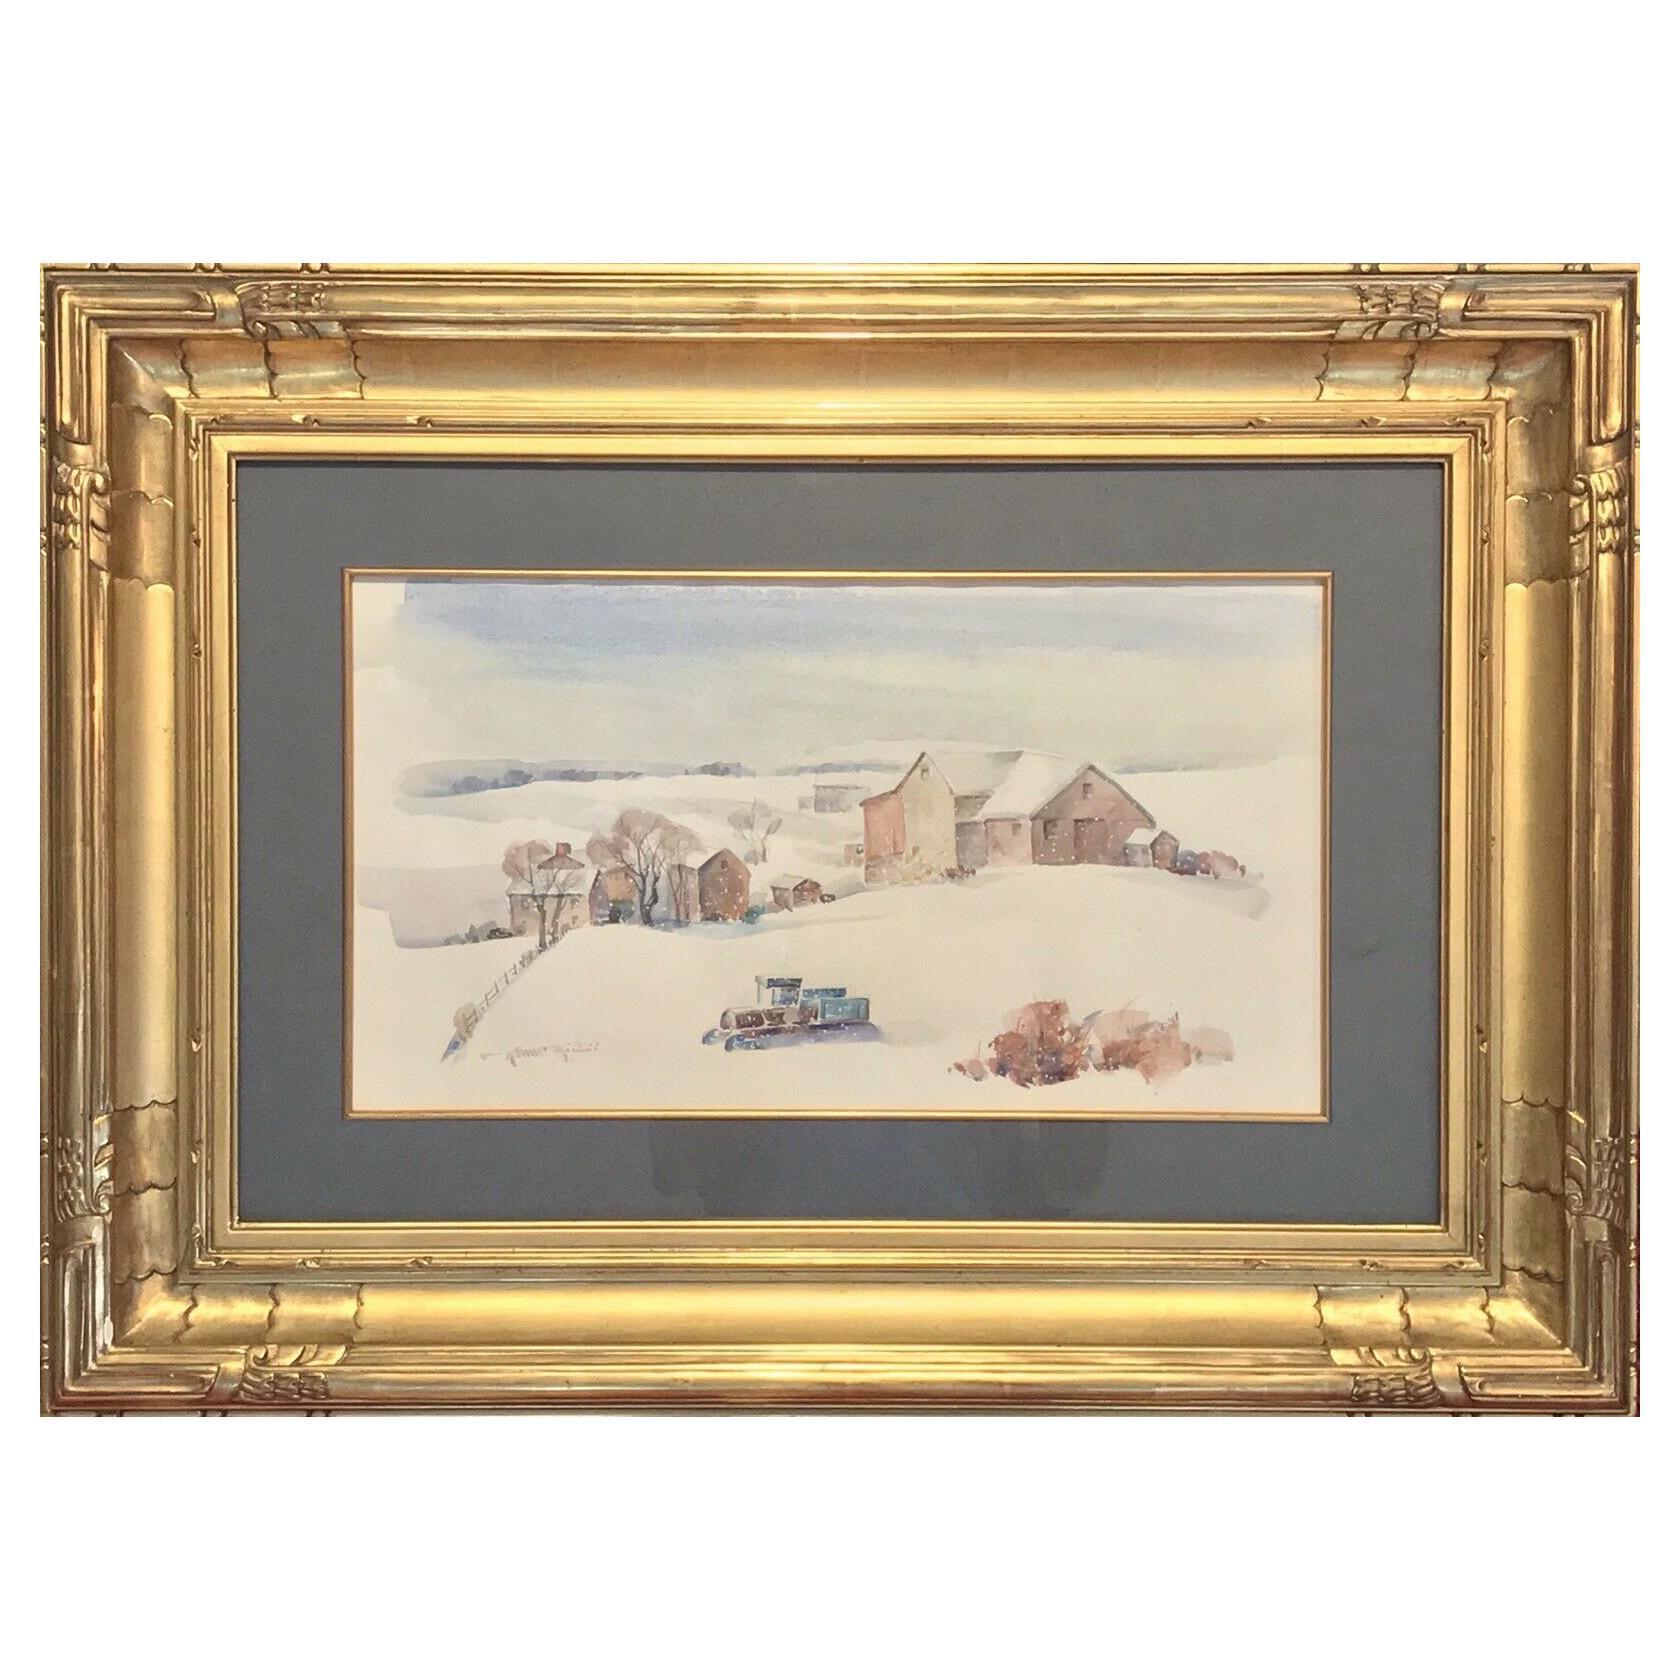 Unknown Landscape Painting - Arthur Meltzer “Winter Farm Landscape” Watercolor